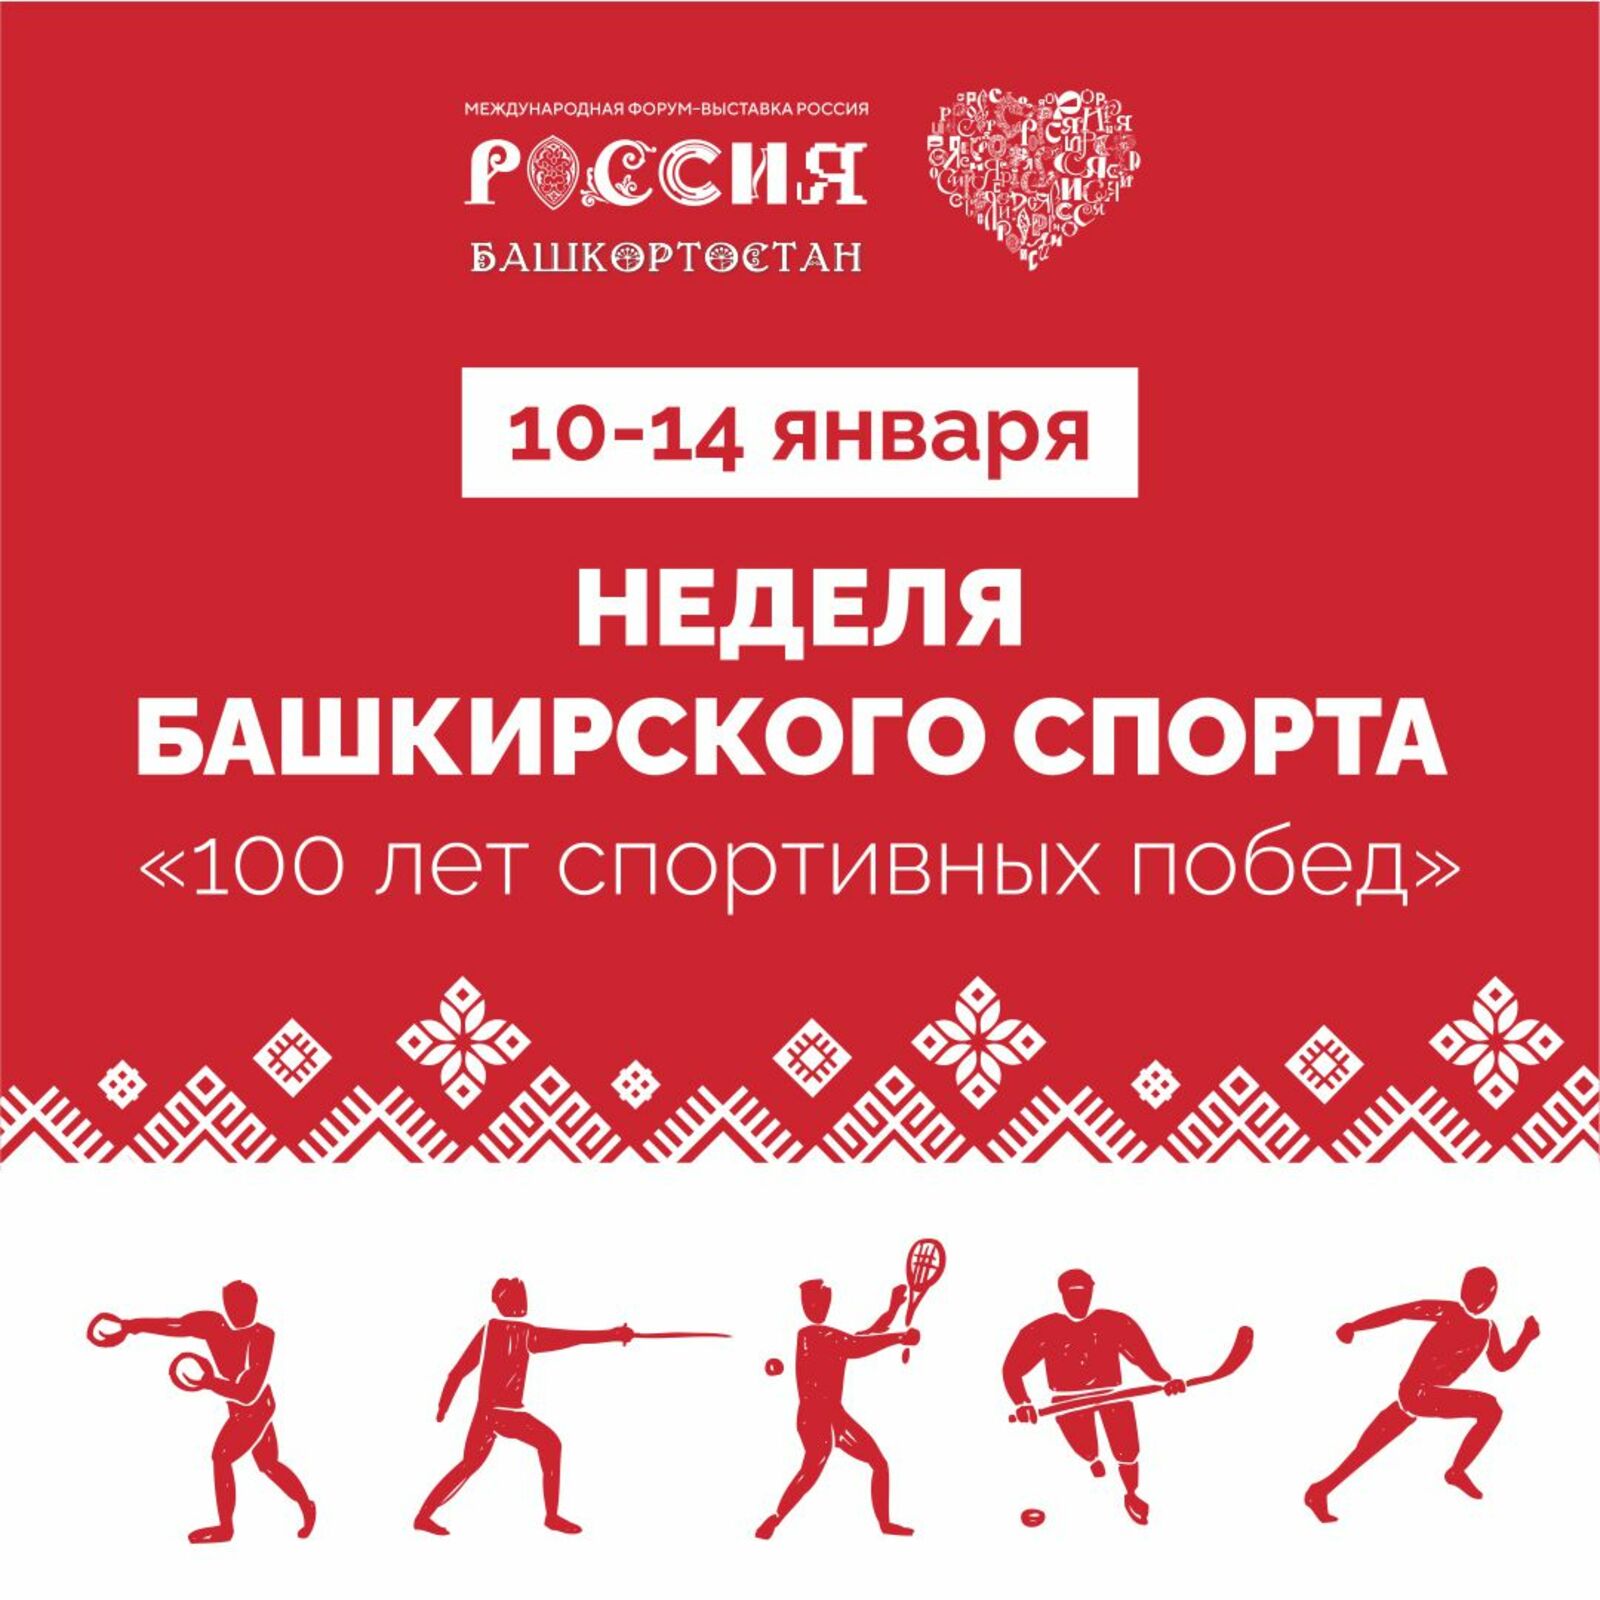 Неделя башкирского спорта пройдет в Москве